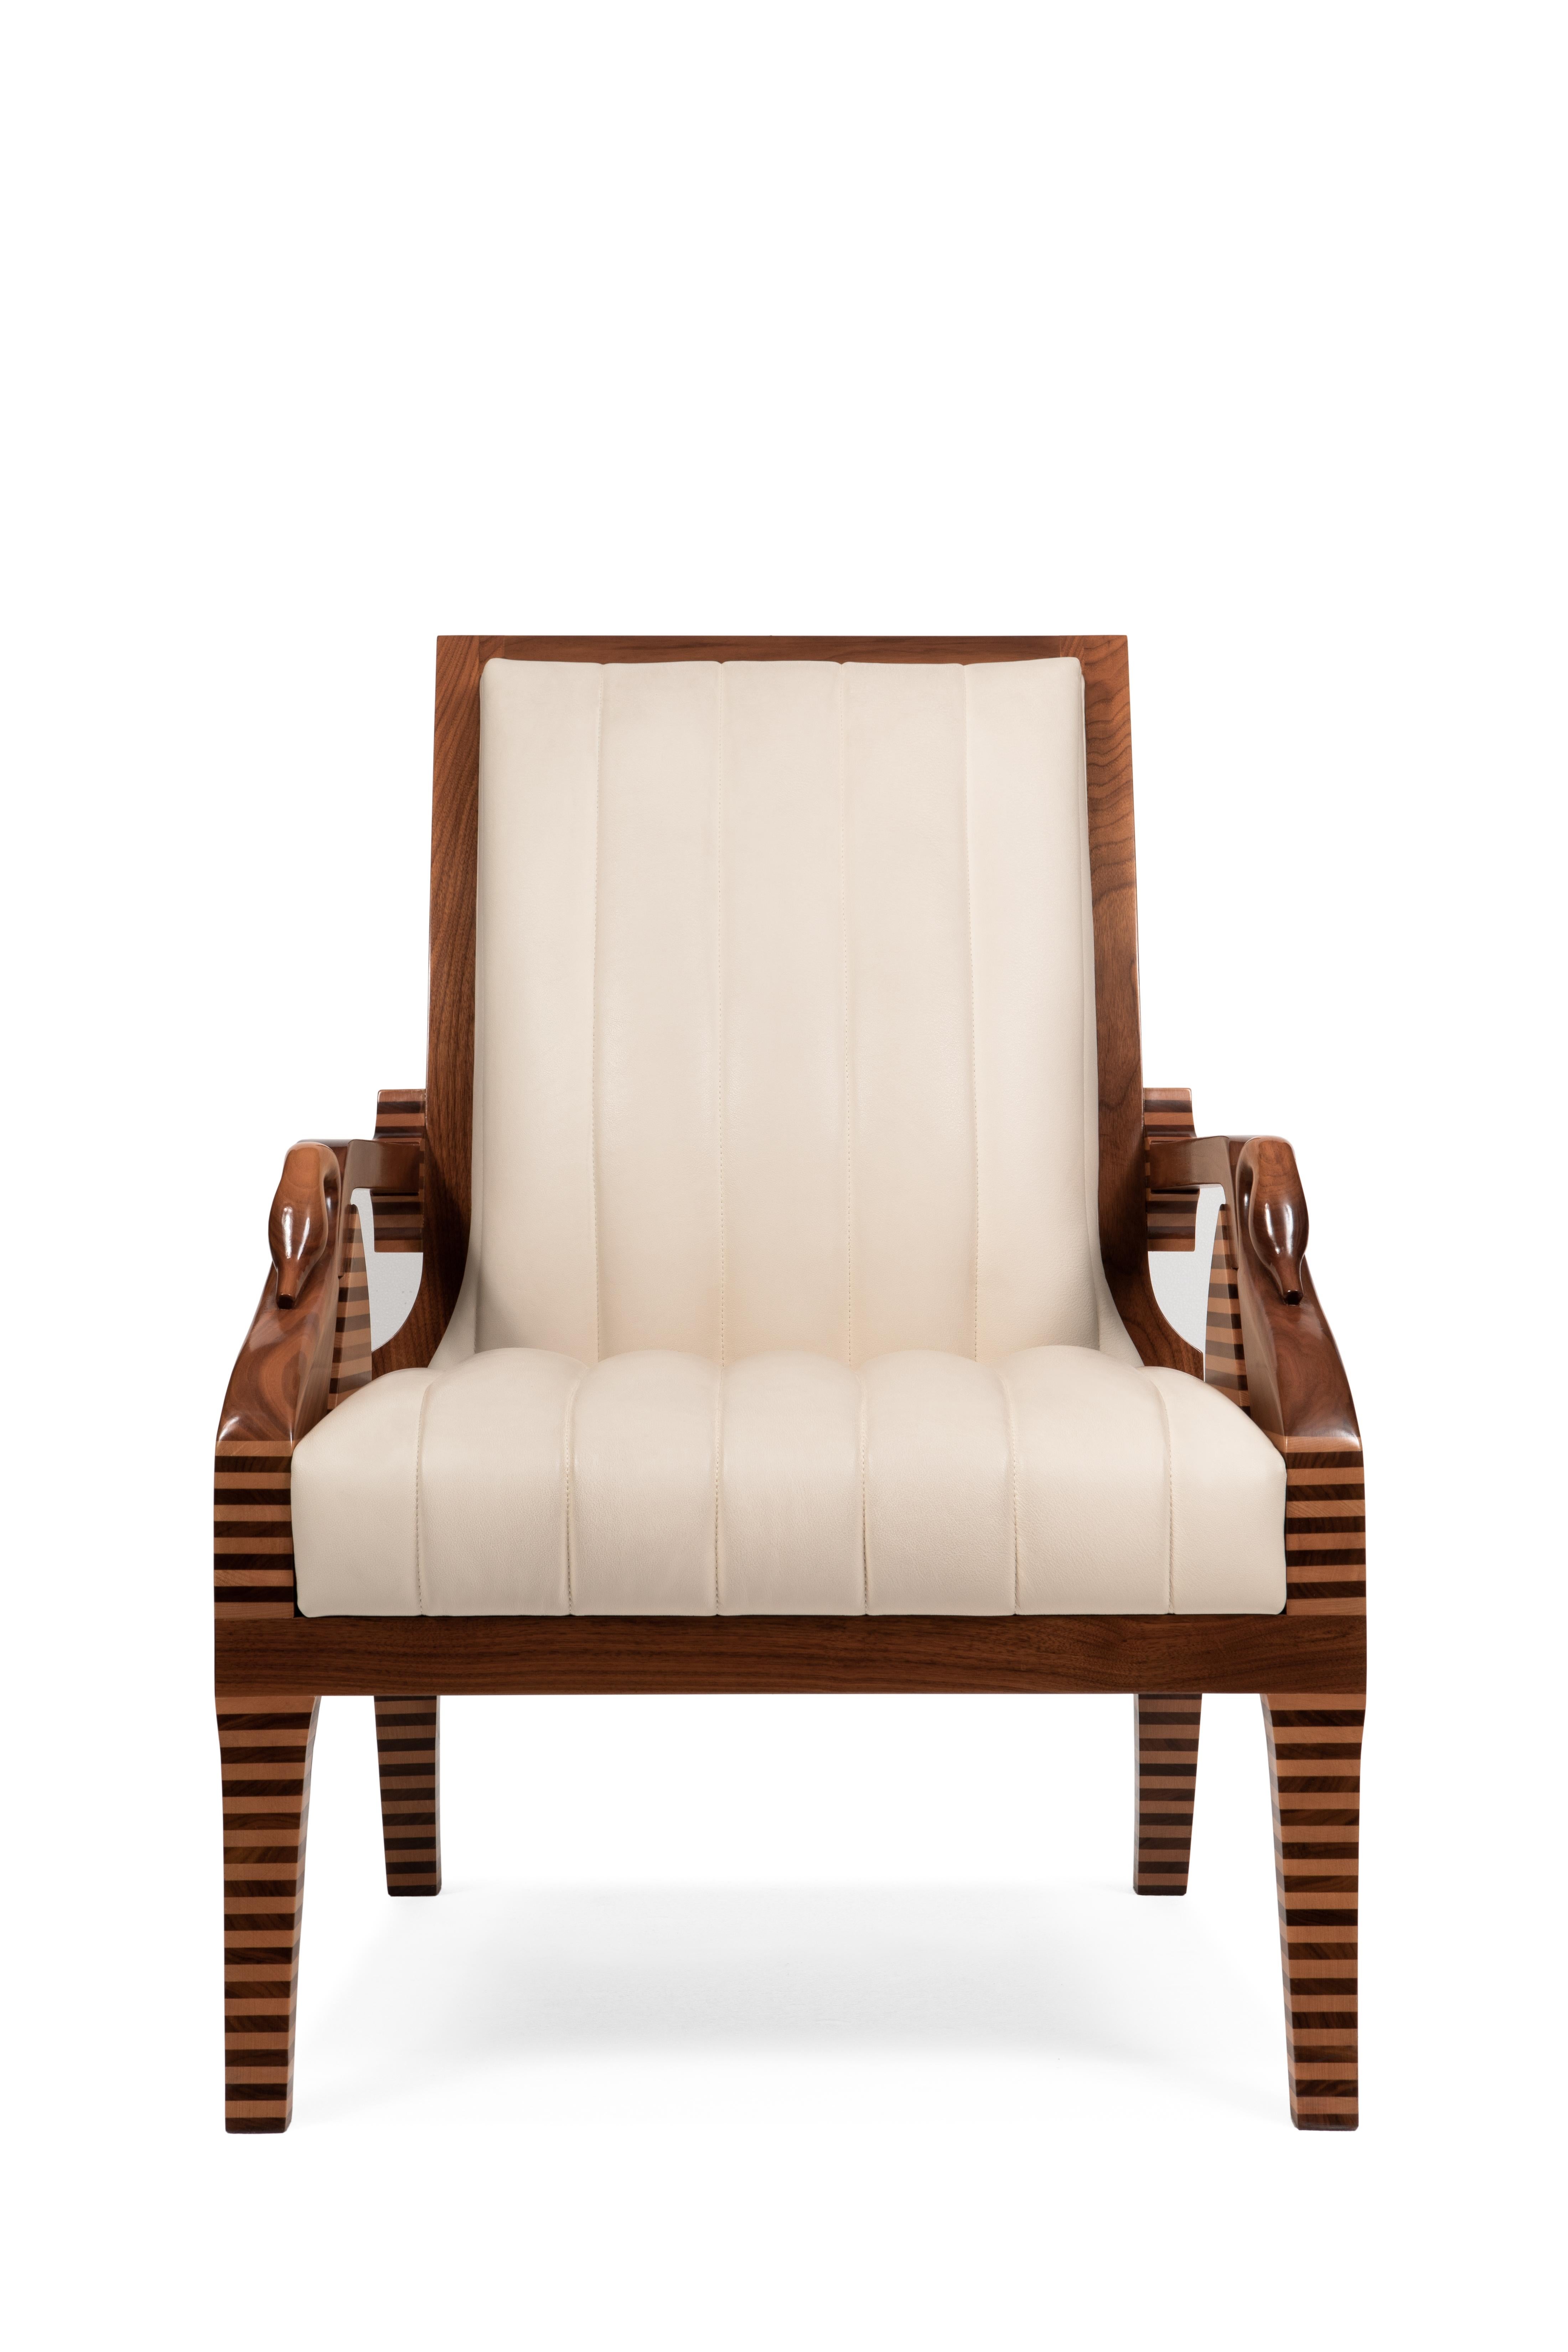 Sessel, inspiriert von klassischen Empire-Sesseln, modernisiert durch die stilisierte Form des Schwans, der die Armlehne charakterisiert. Er wurde 1998 entworfen und wird immer noch produziert.
Das Gestell ist aus Nussbaum- und Buchenholz, und die